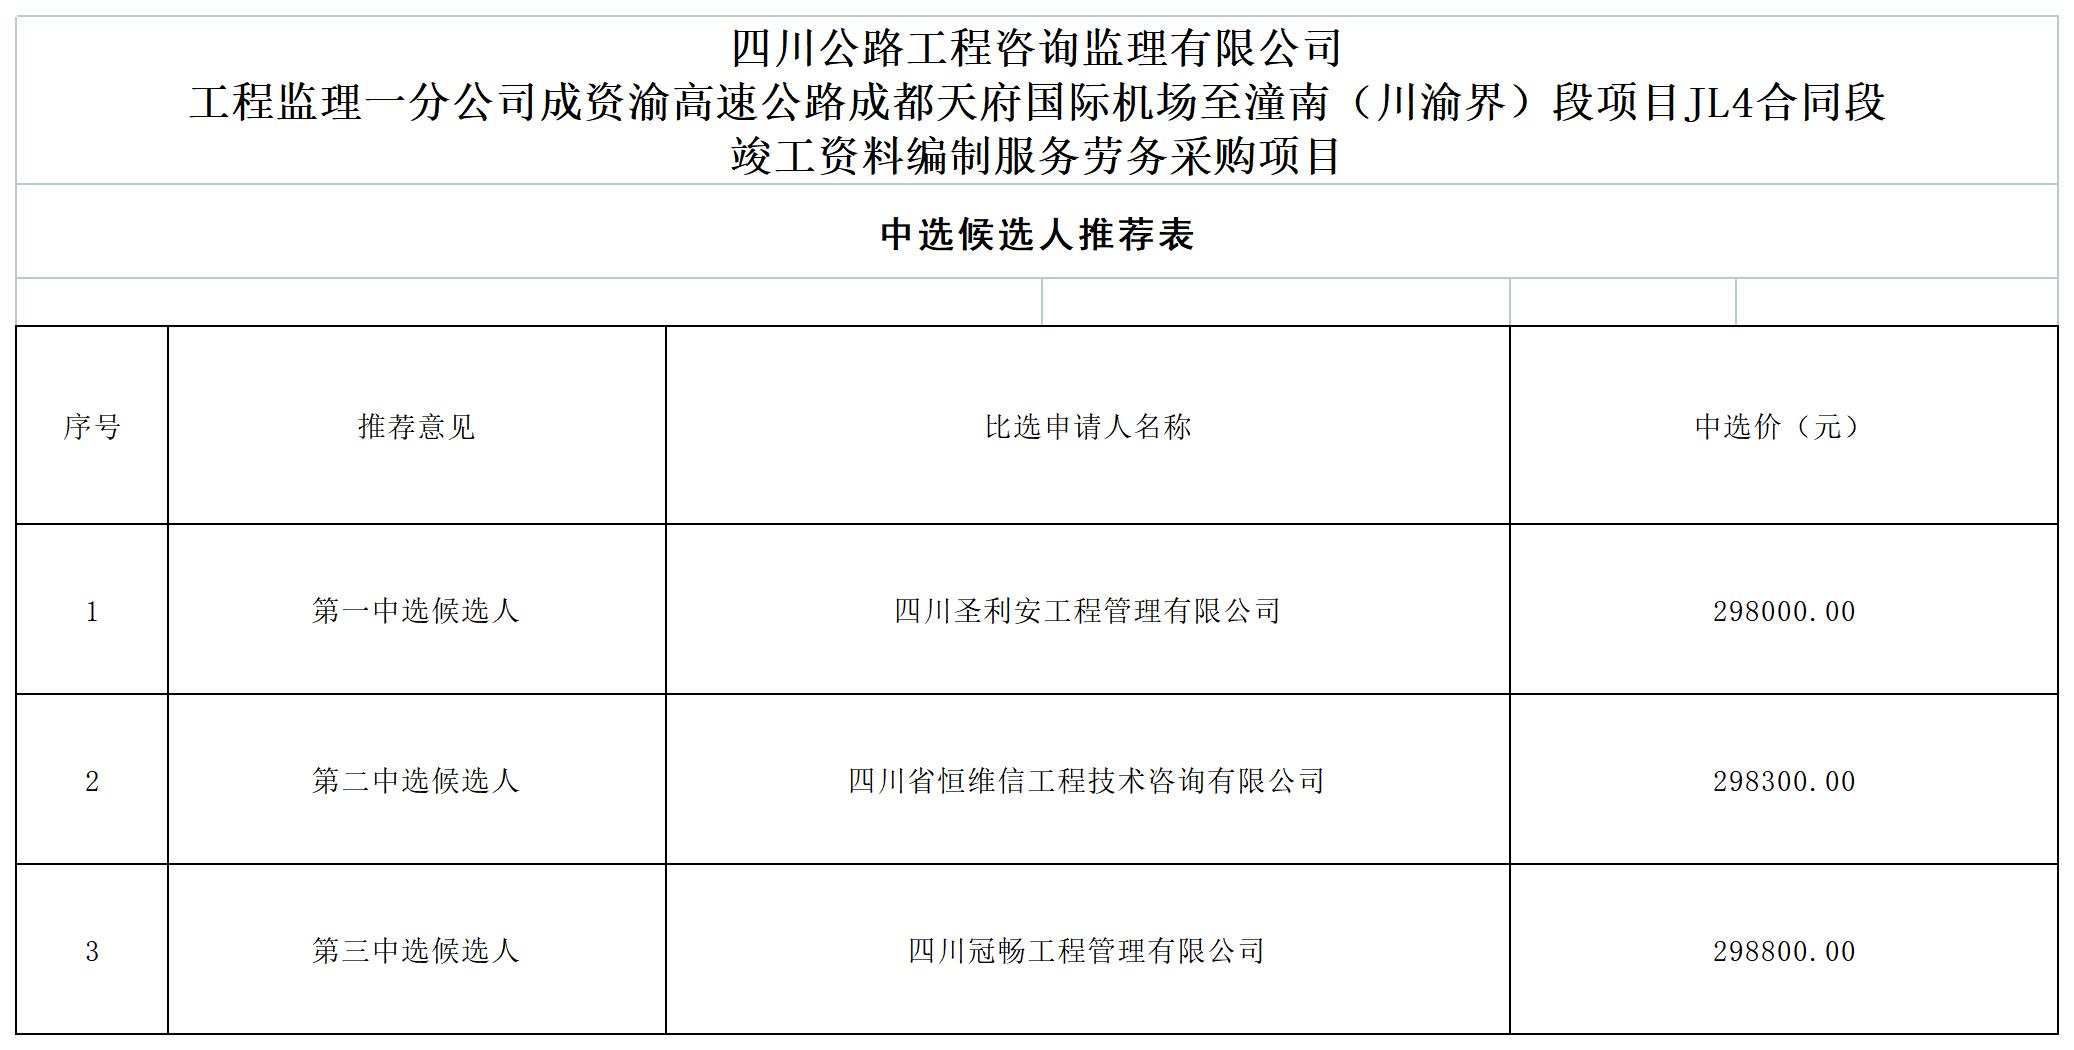 工程监理一分公司竣工资料劳务中选候选人公示（9月） (1)_A1F7.jpg